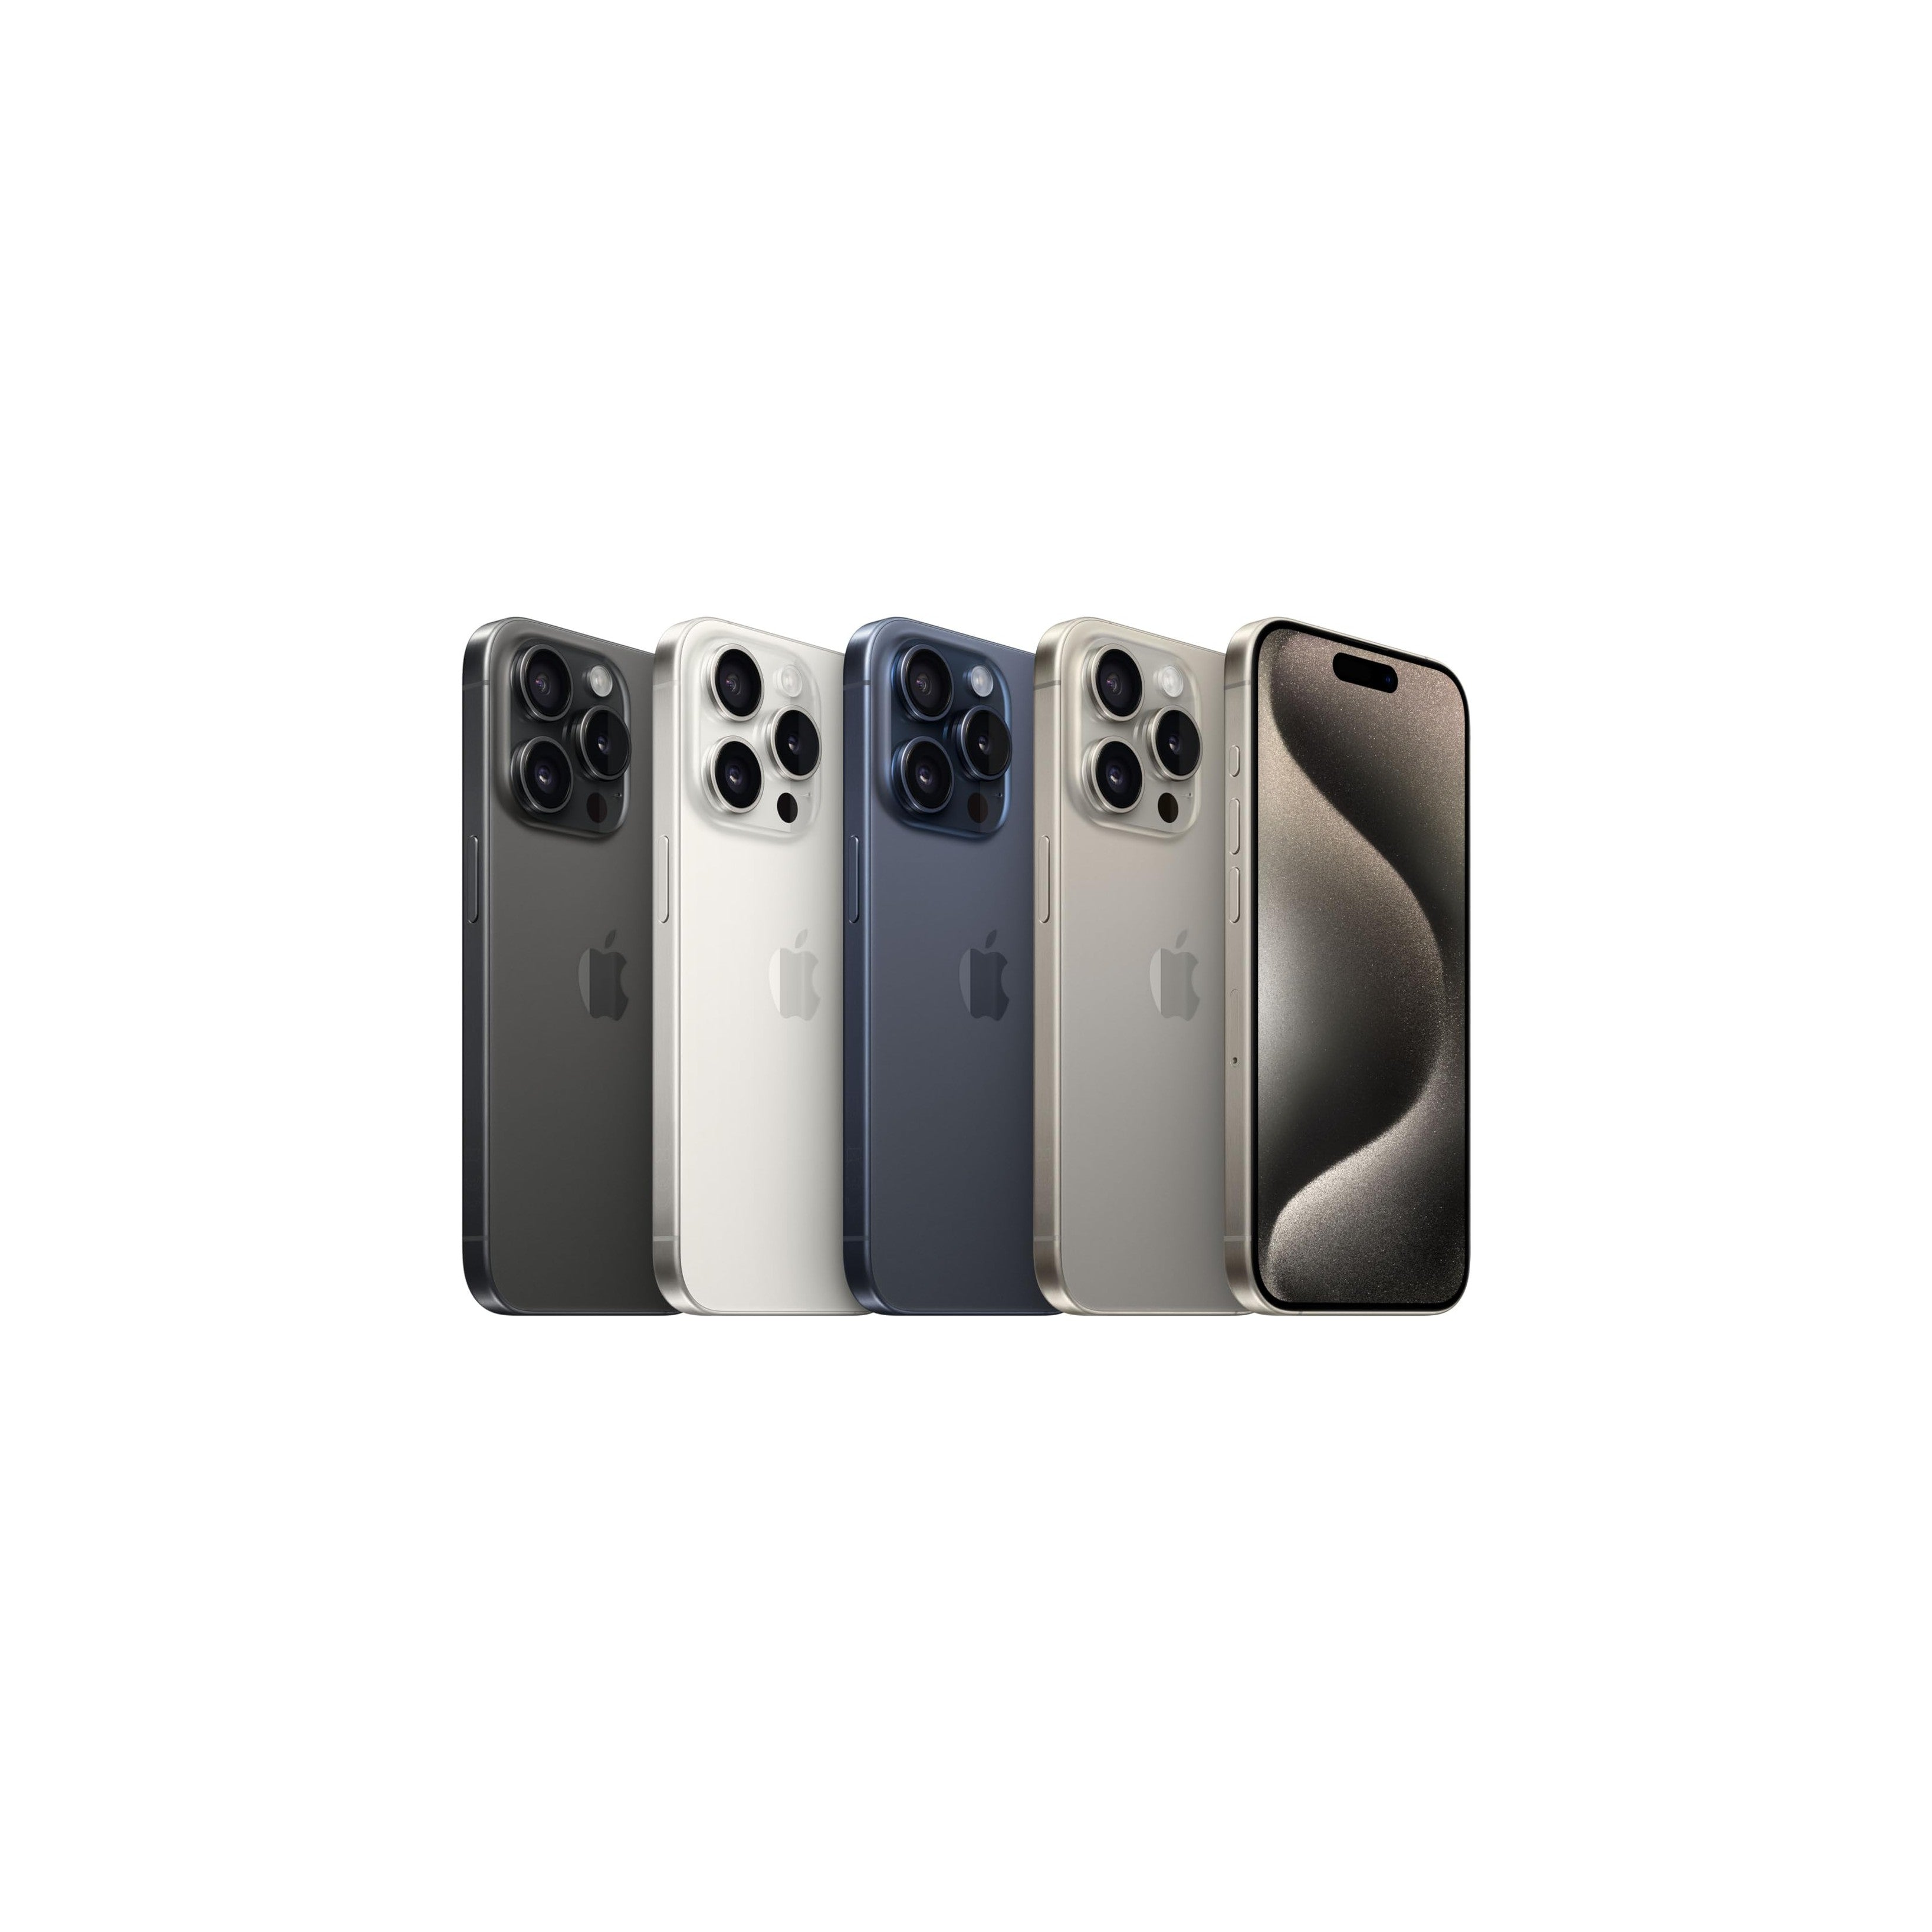 Apple iPhone 15 Pro (128 GB) - Titanio nero-iStoreMilano